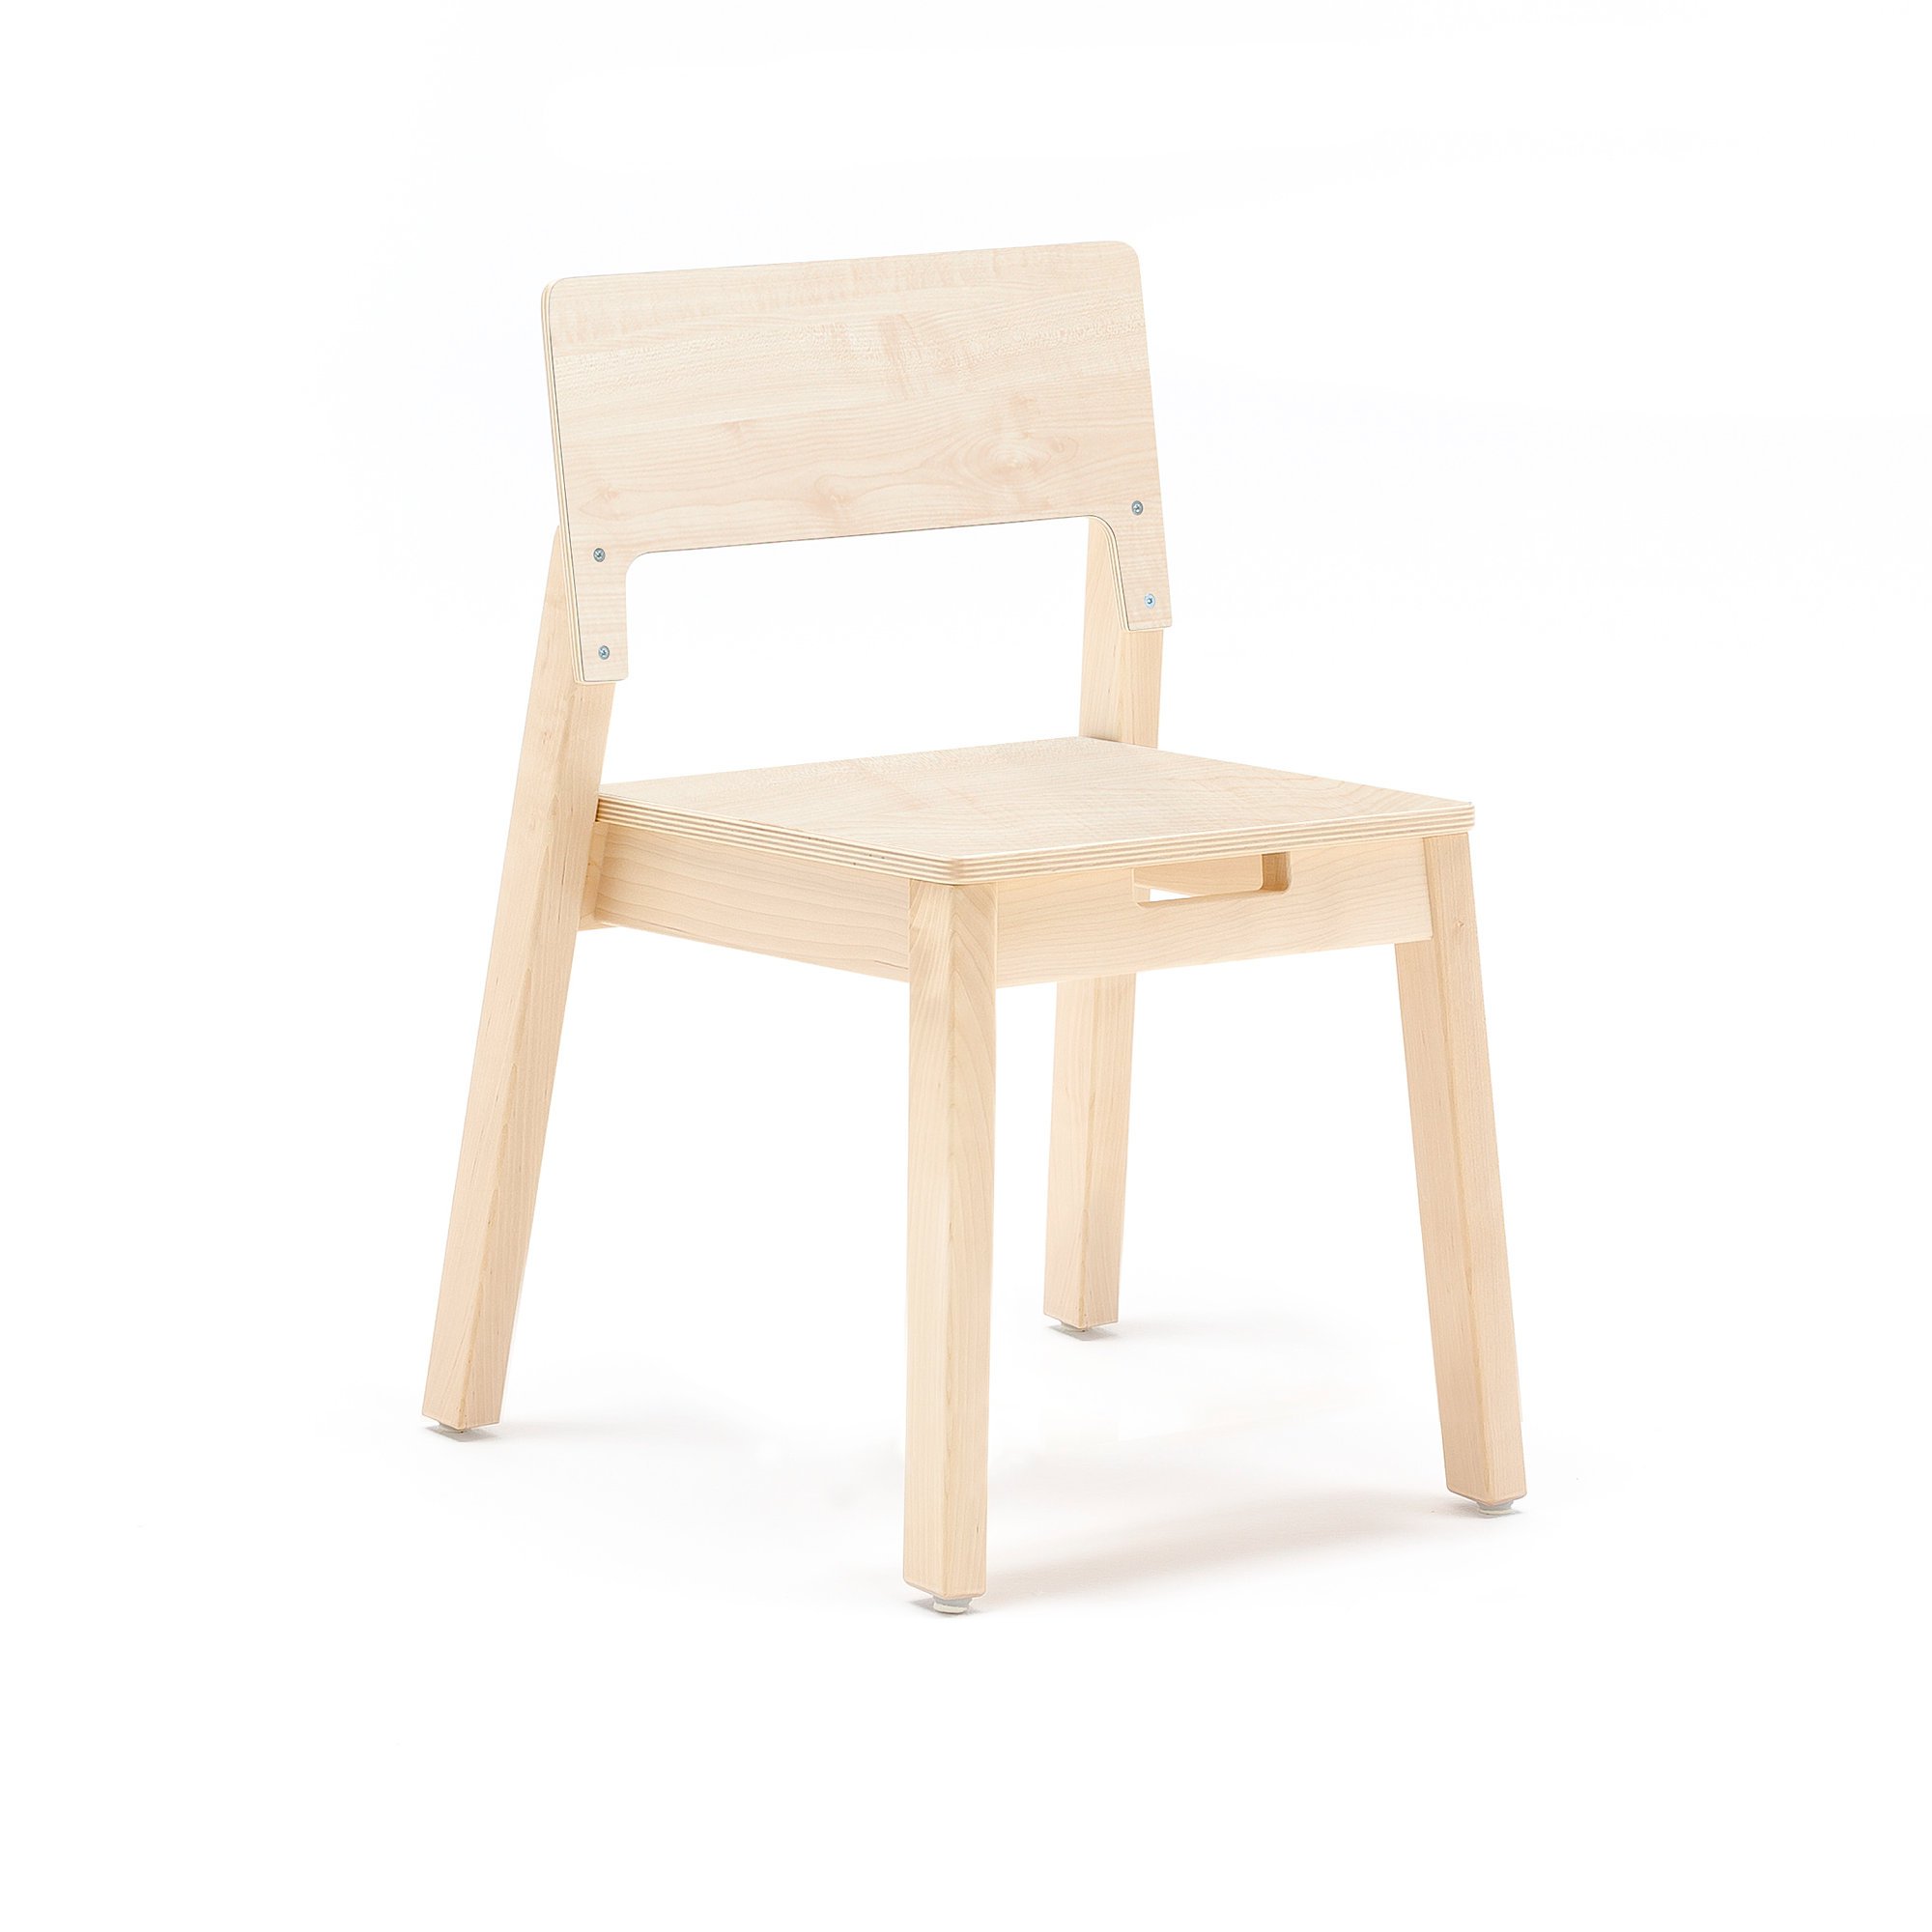 Children's chair LOVE, H 380 mm, birch, birch laminate